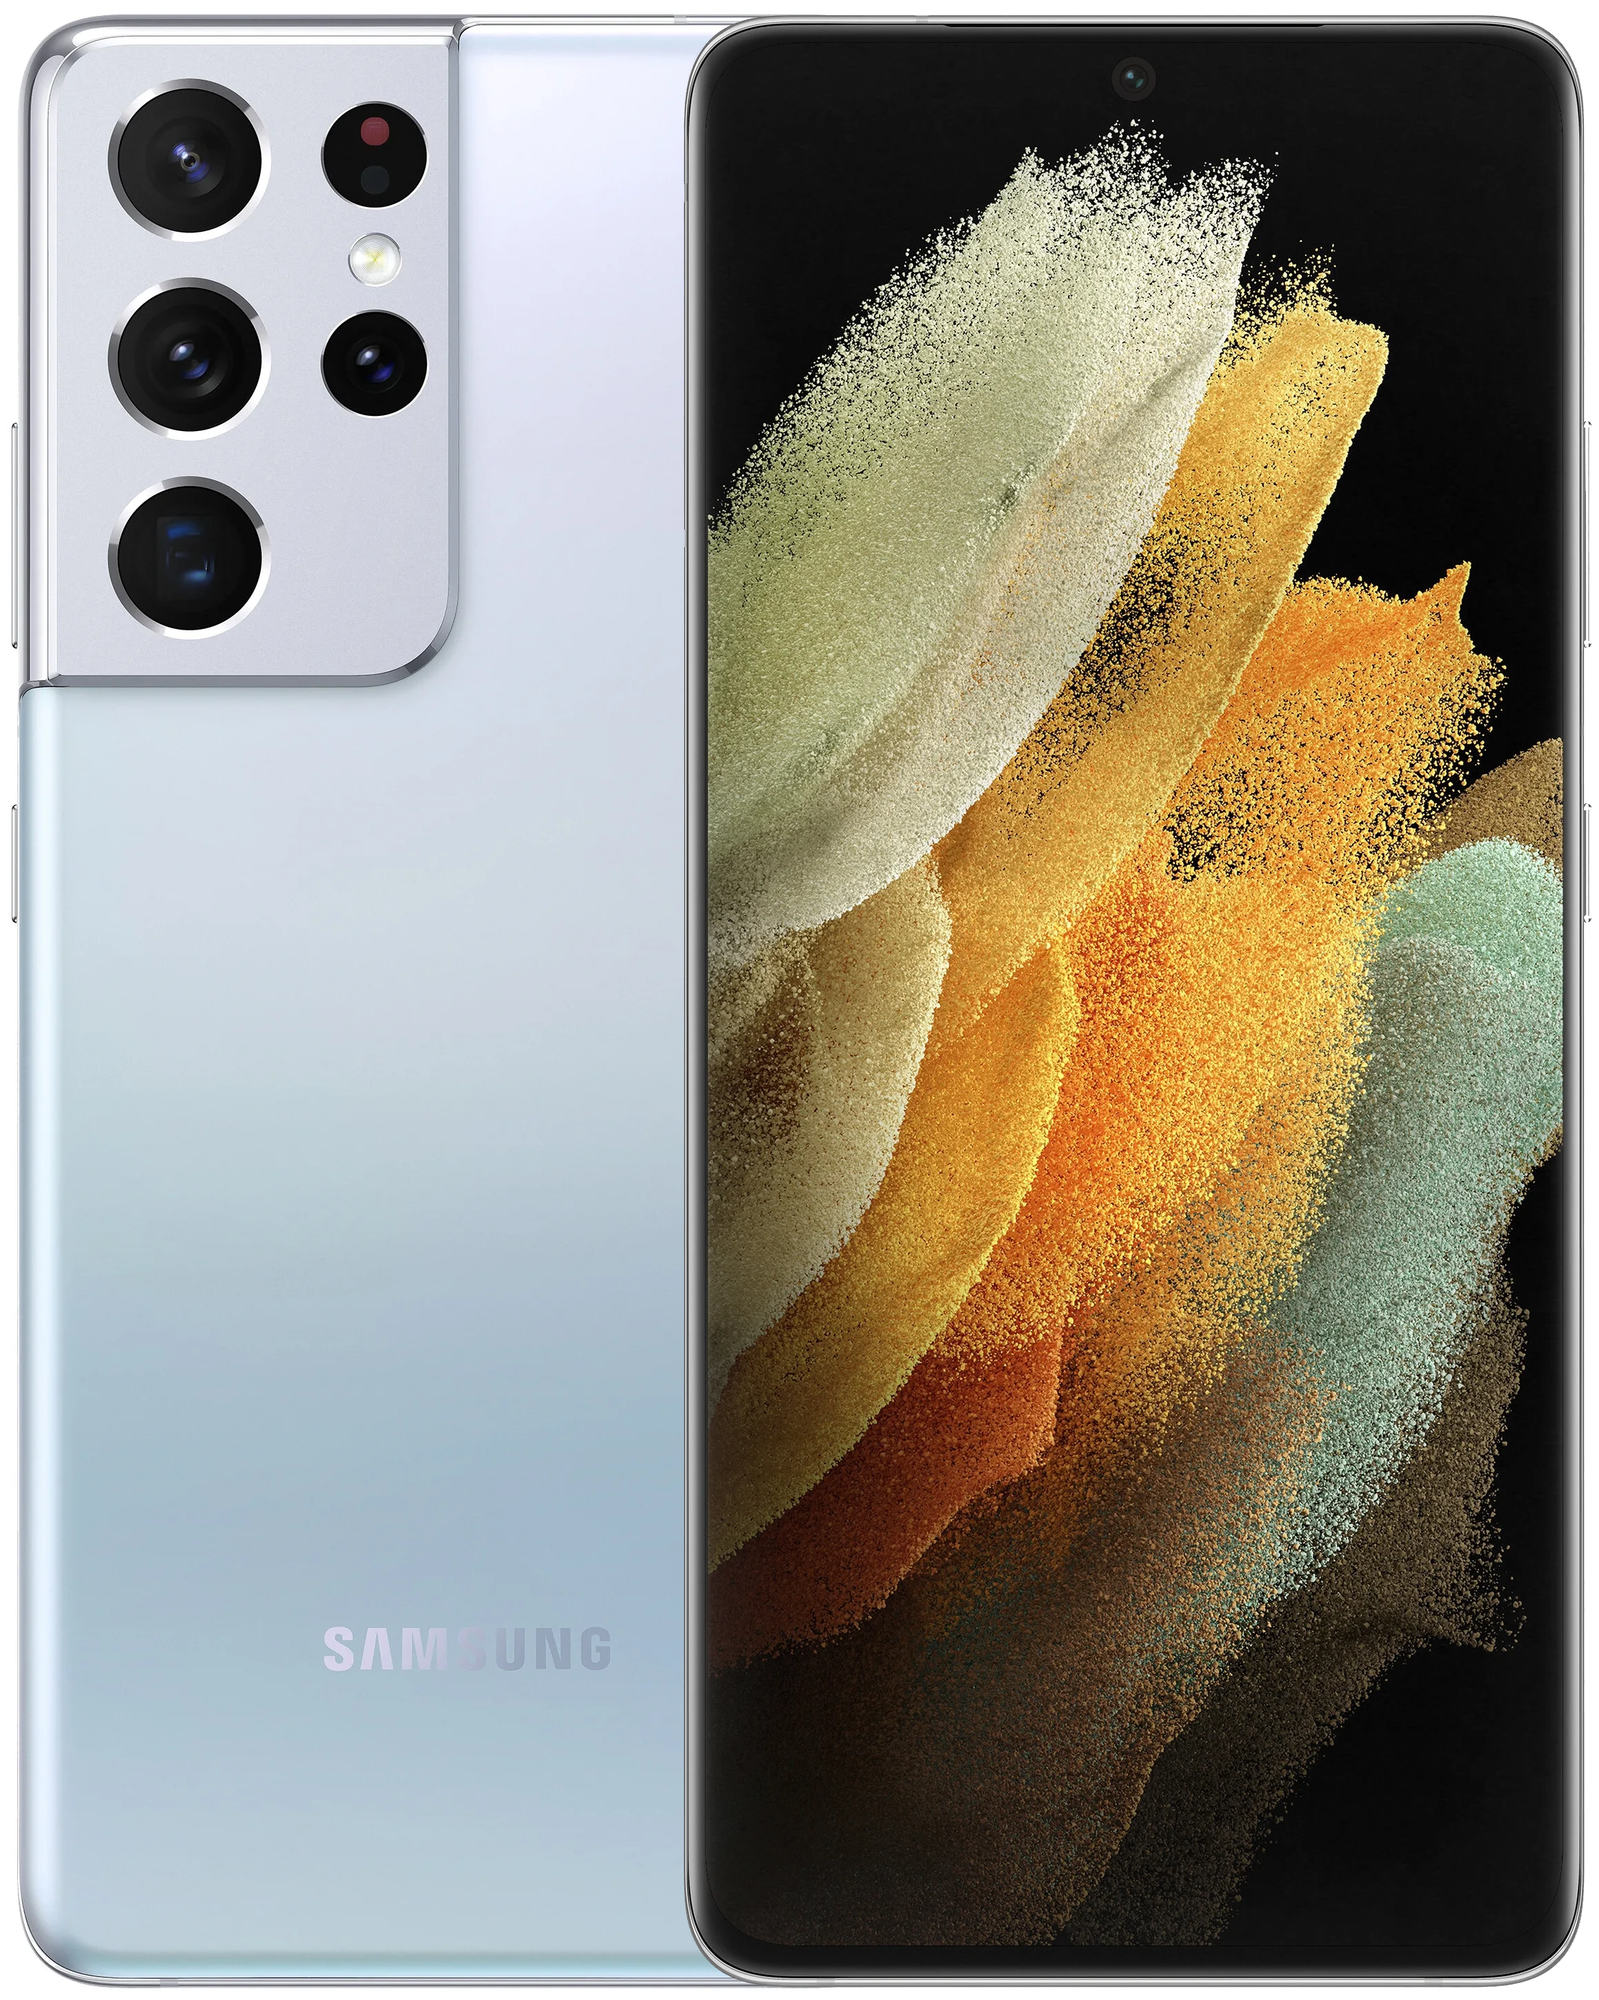 Смартфон Samsung Galaxy S21 Ultra 5G (SM-G998B) 12/256 ГБ RU, Серебряный фантом